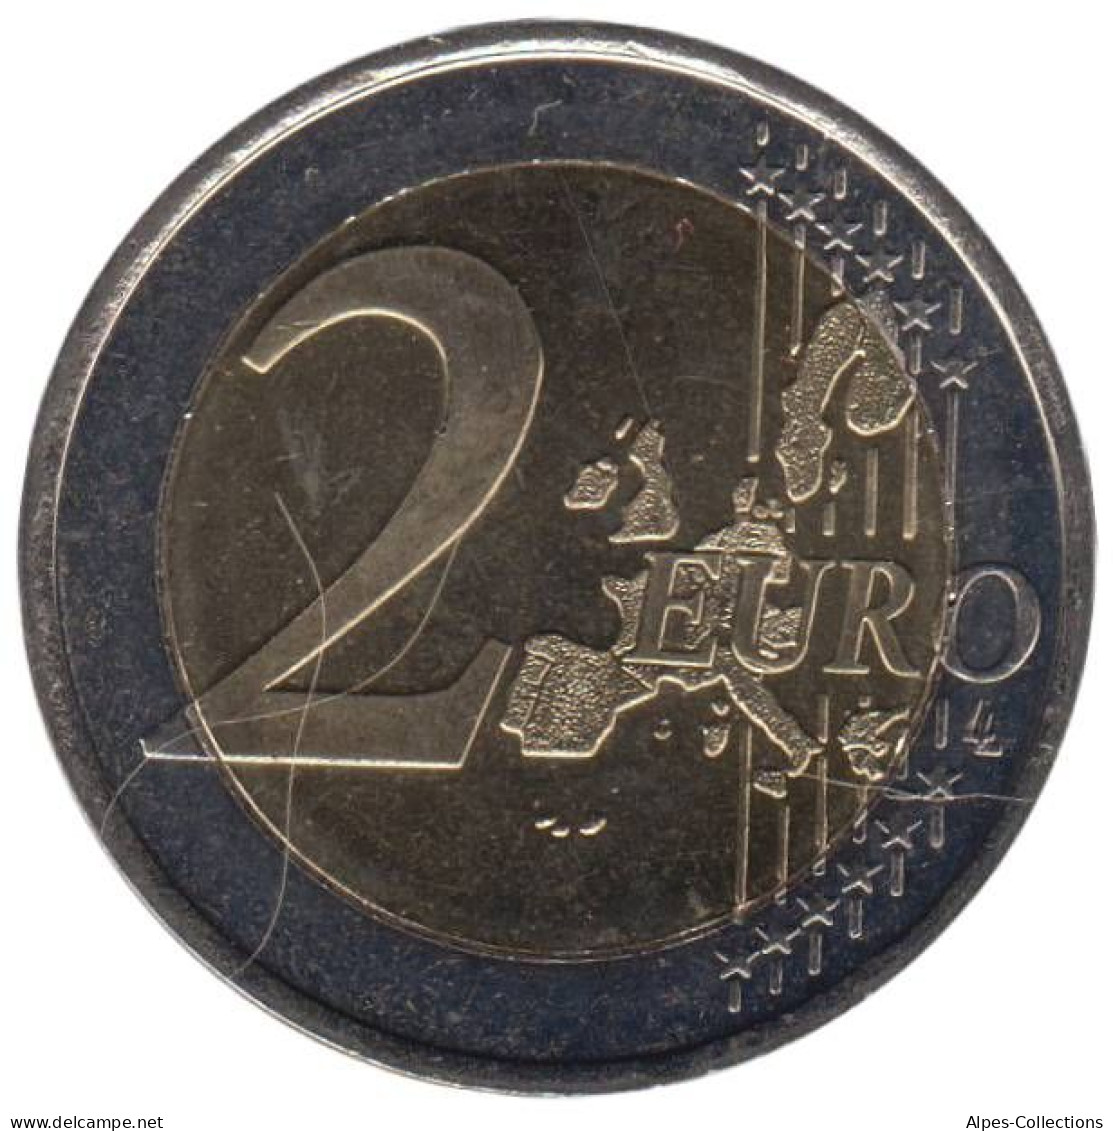 FI20003.1 - FINLANDE - 2 Euros - 2003 - Finland